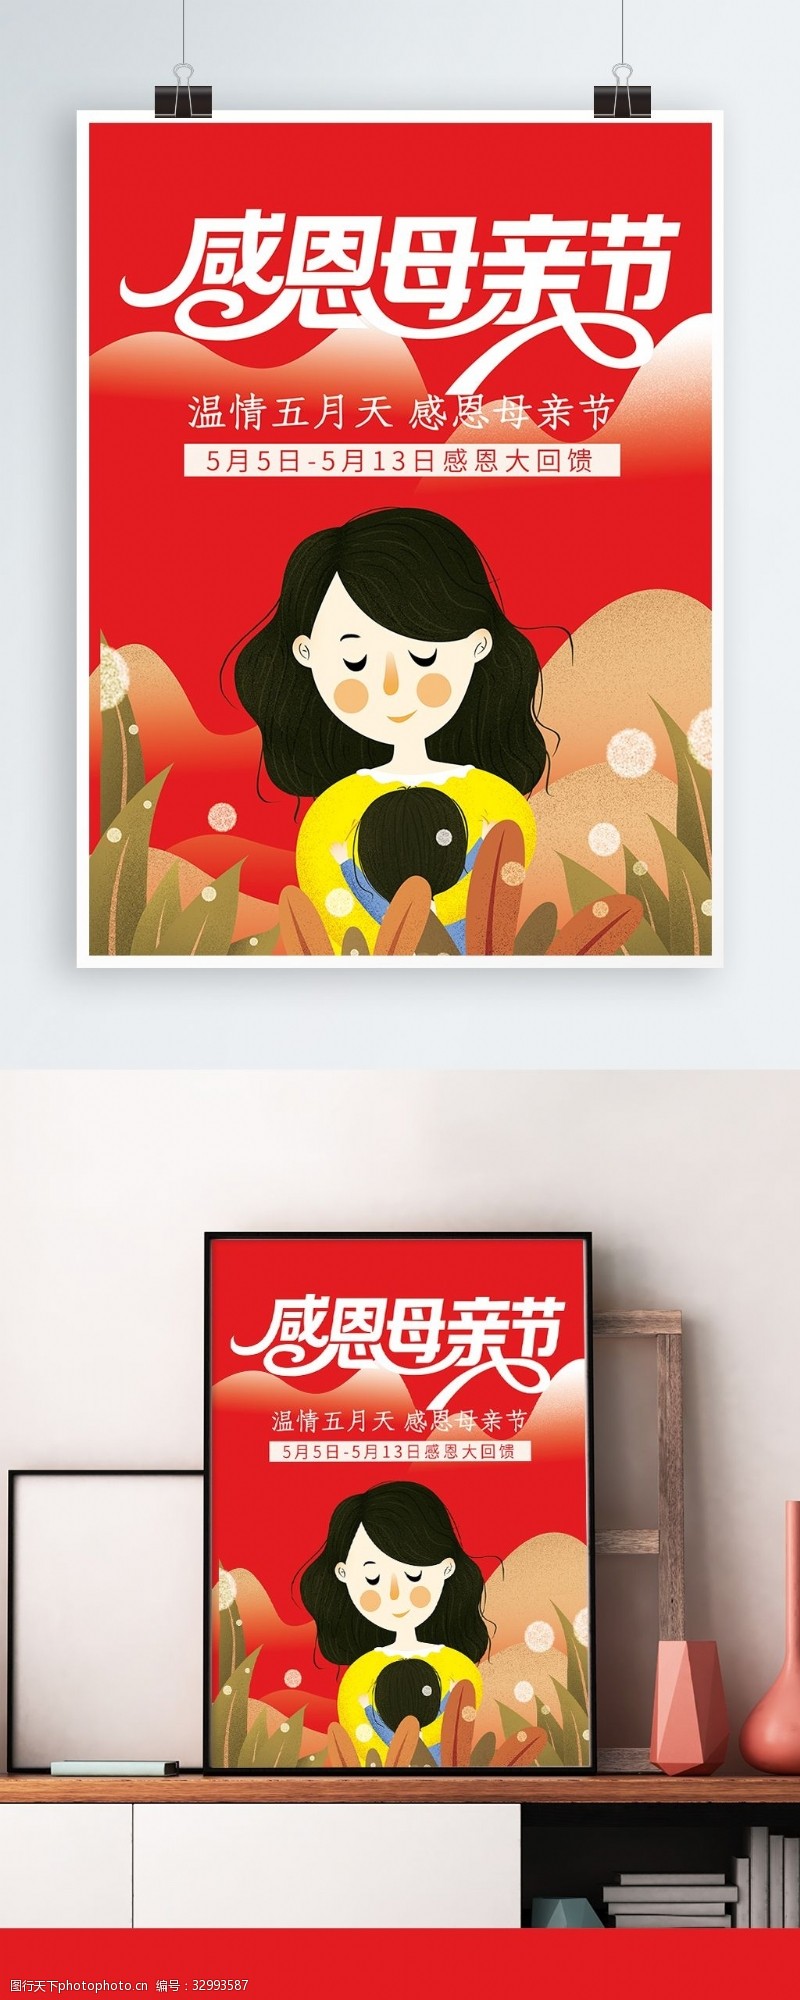 温馨五月母亲节海报宣传设计